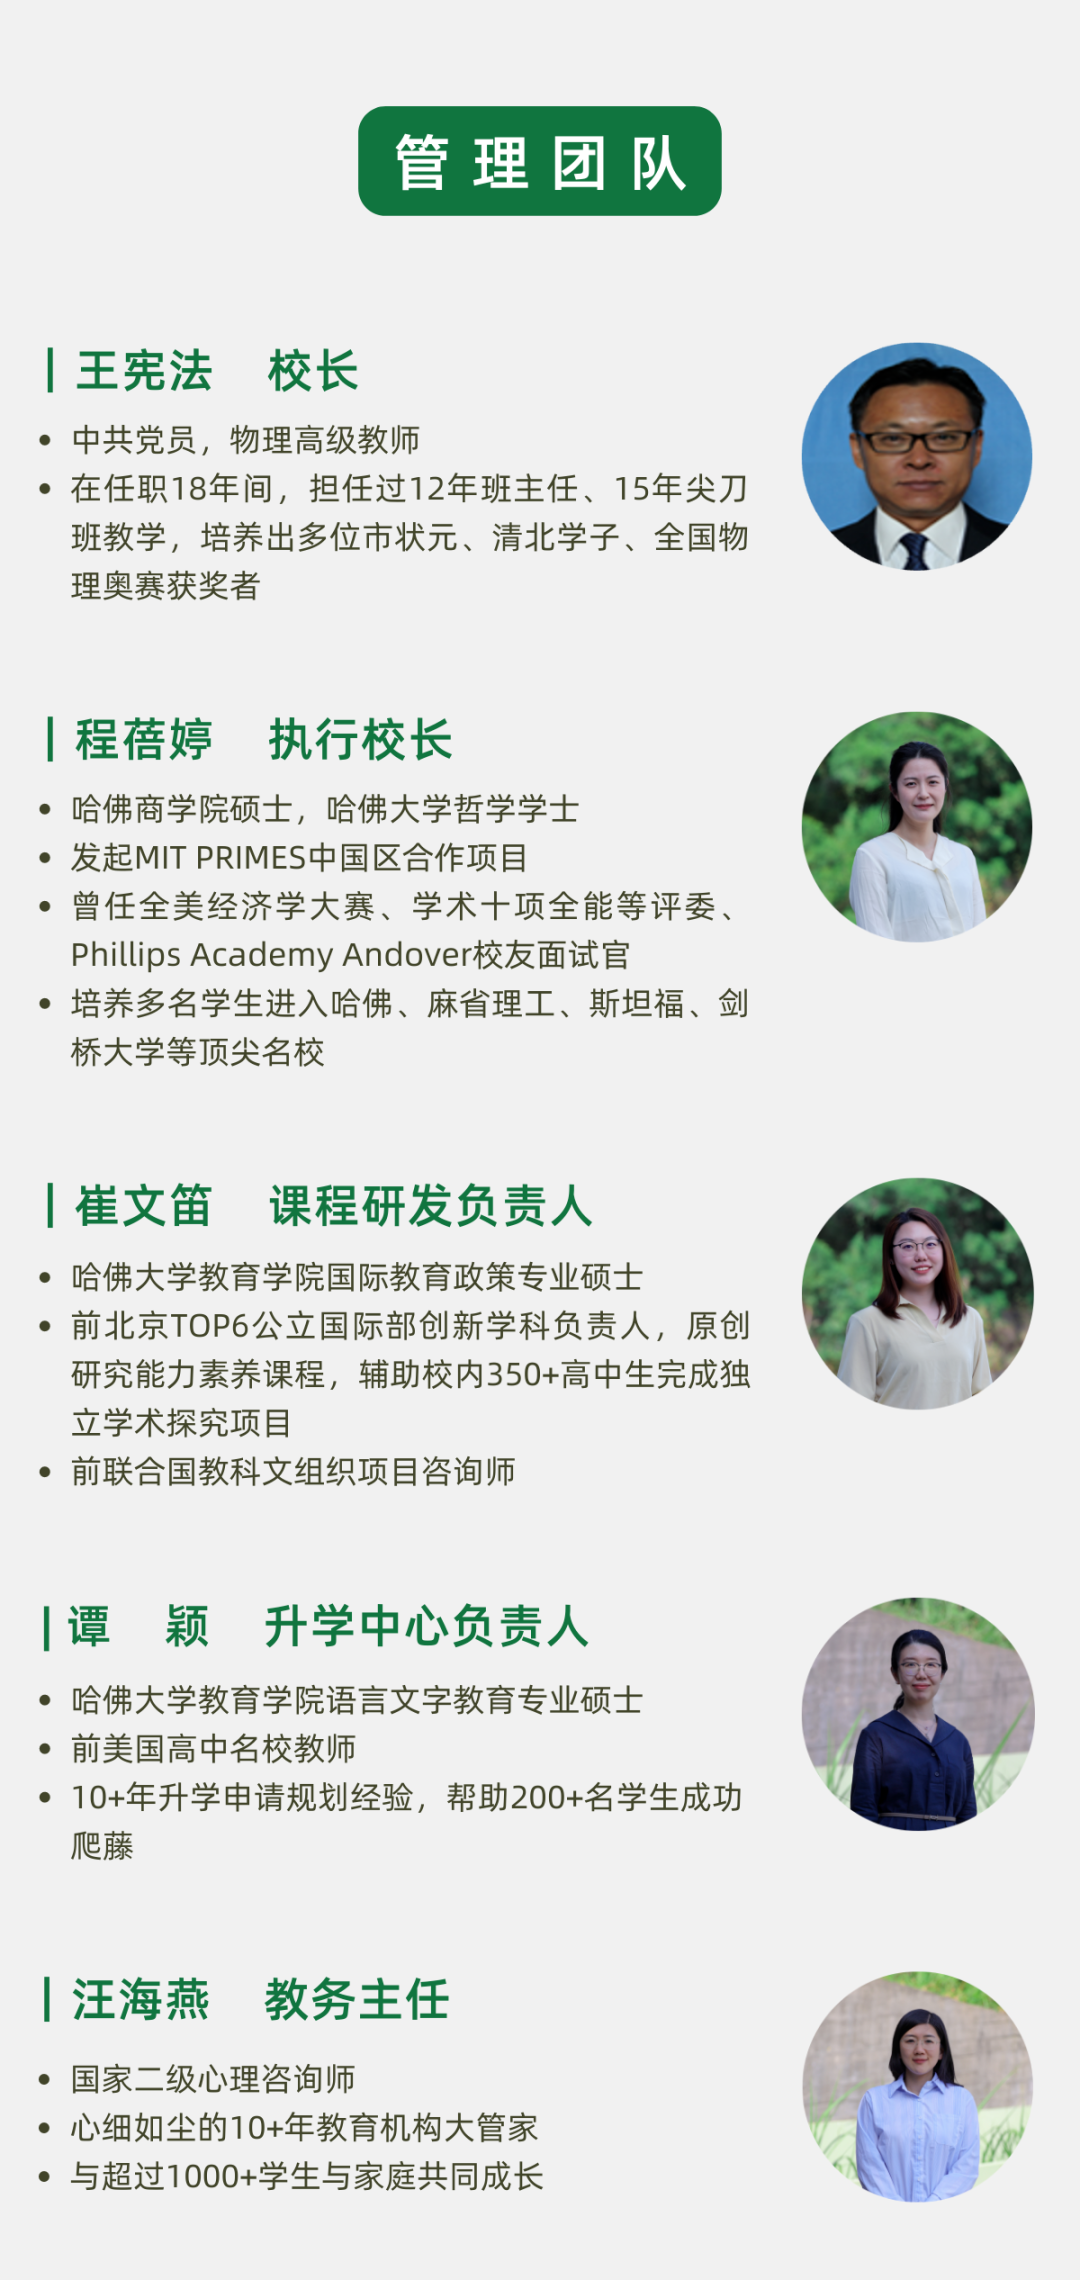 深圳市明德实验双语学校管理团队